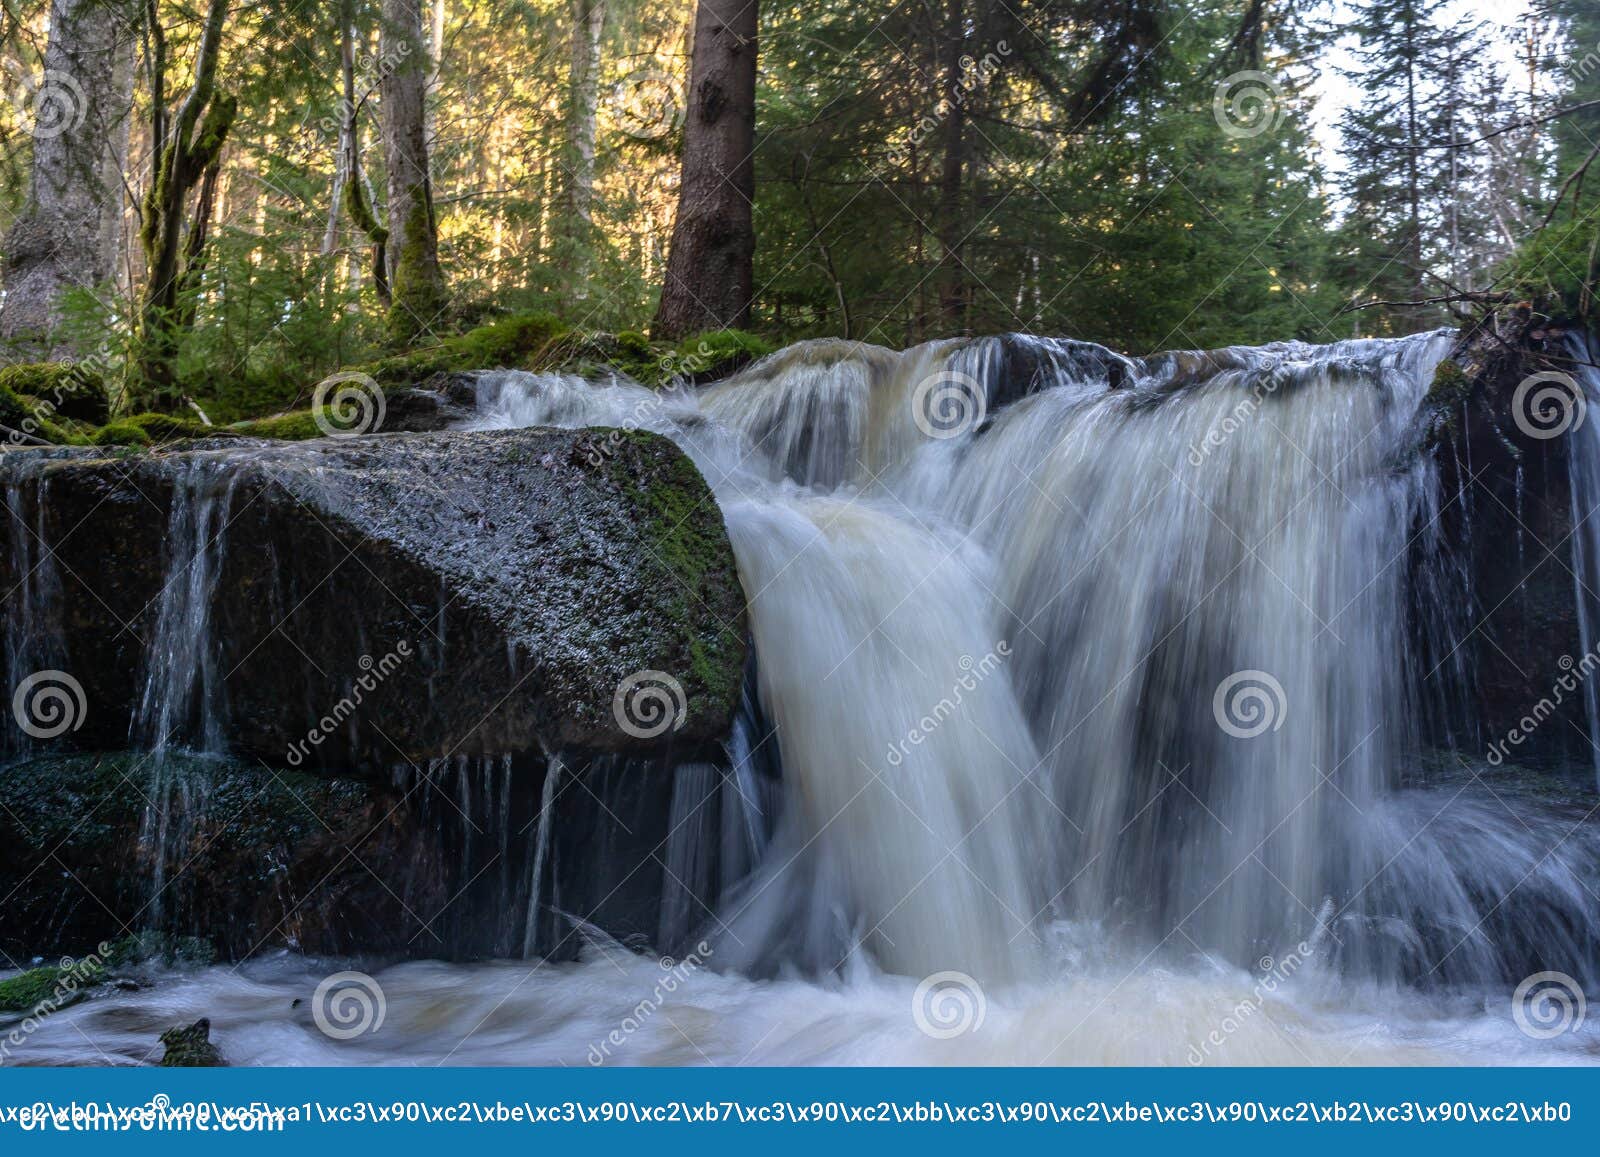 Cascade Falls Over Mossy Rocks Stock Image Image Of Landscape Leaf